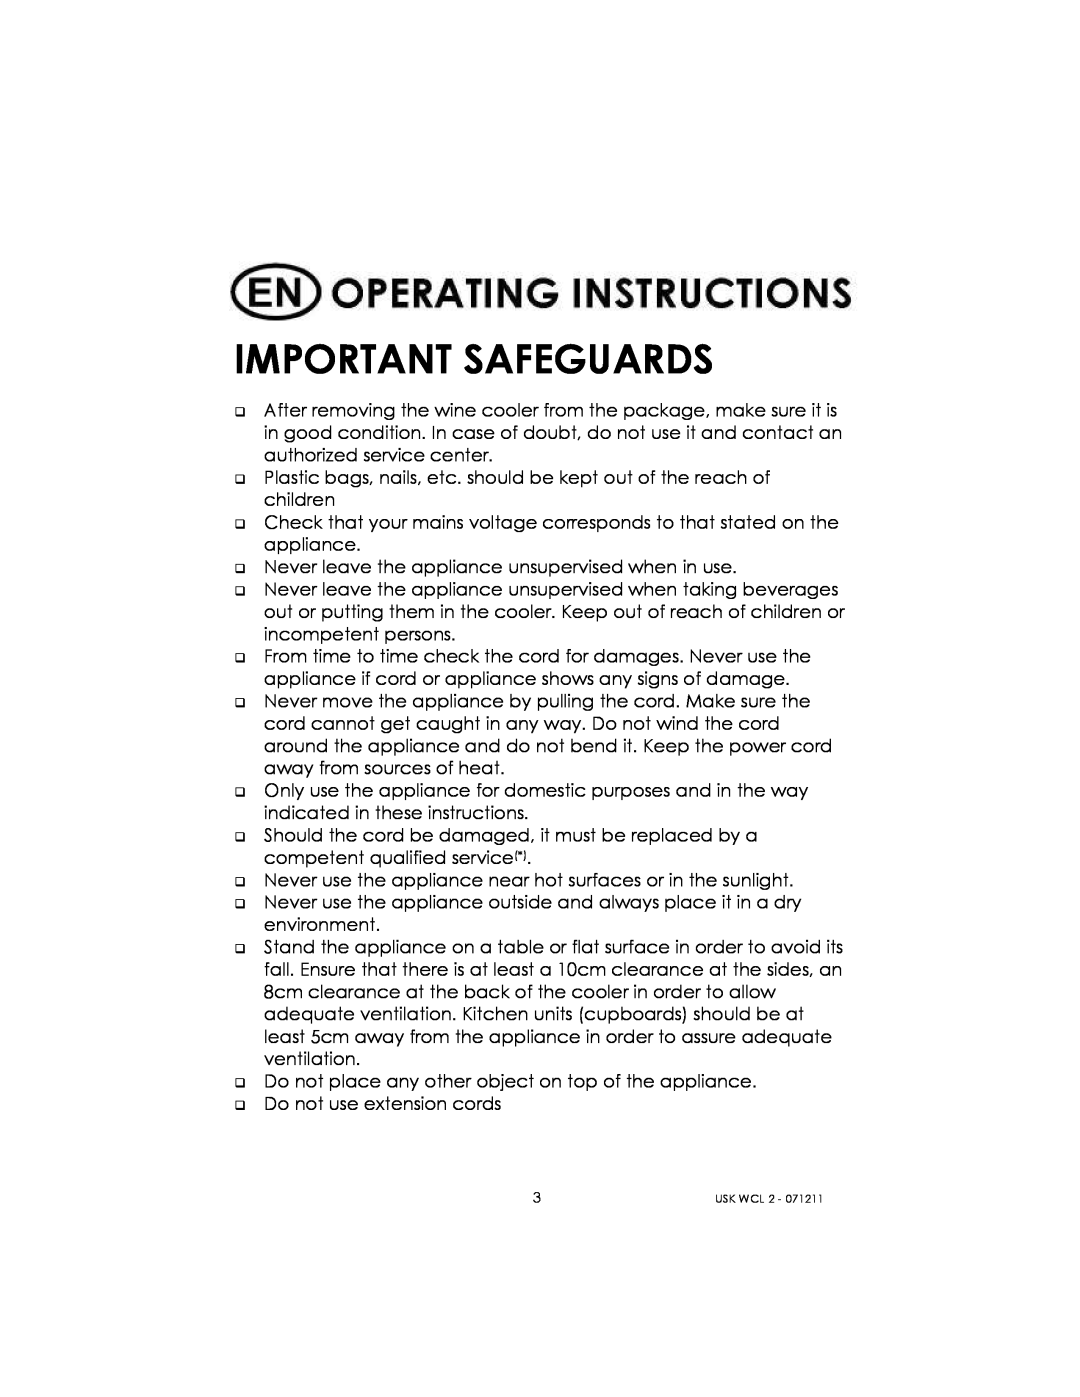 Kalorik USK WCL 2 manual Important Safeguards 